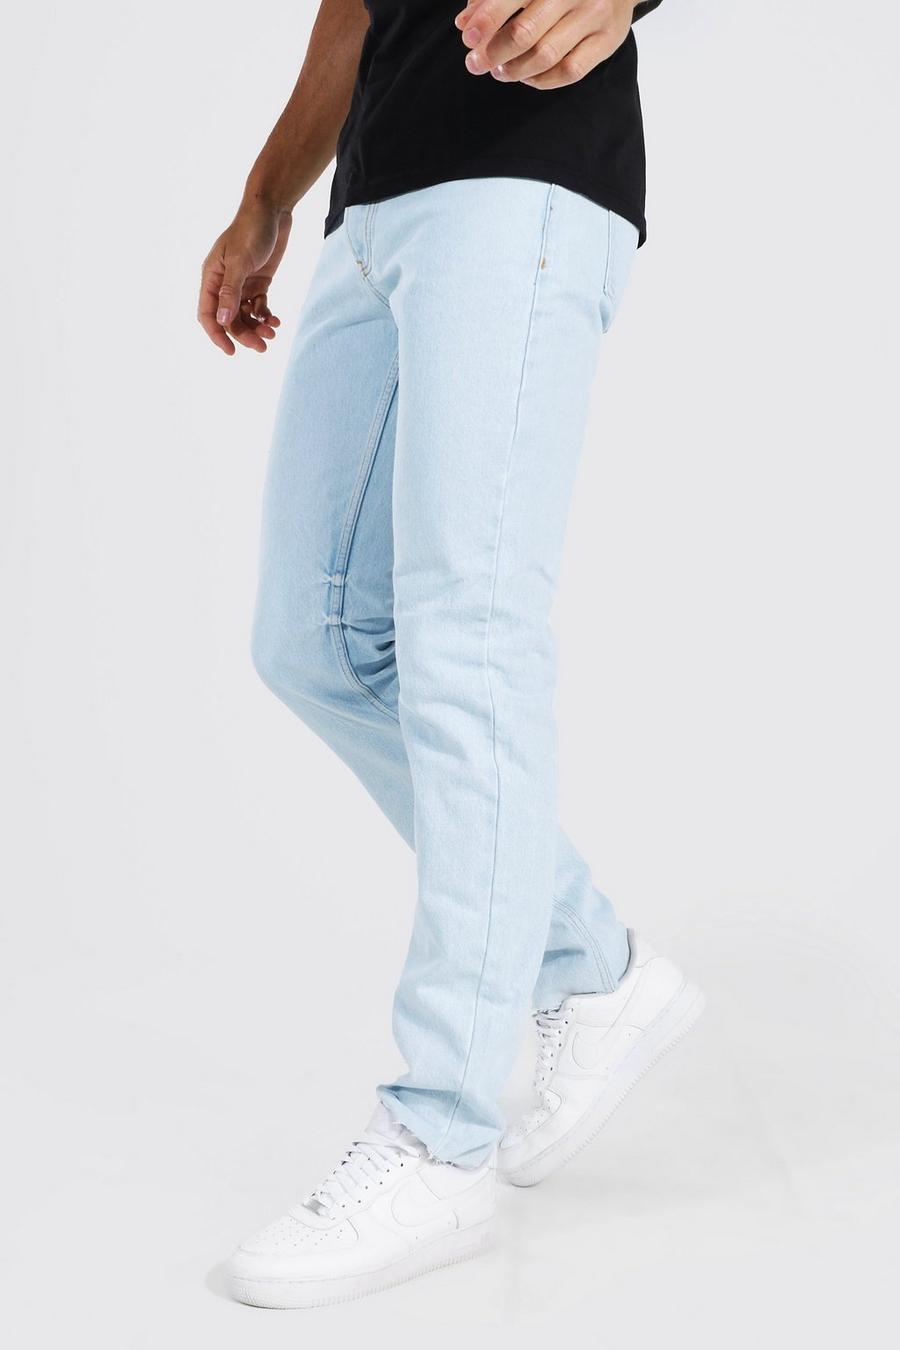 כחול בהיר blue ג'ינס בגזרה ישרה עם קרעים במכפלת לגברים גבוהים